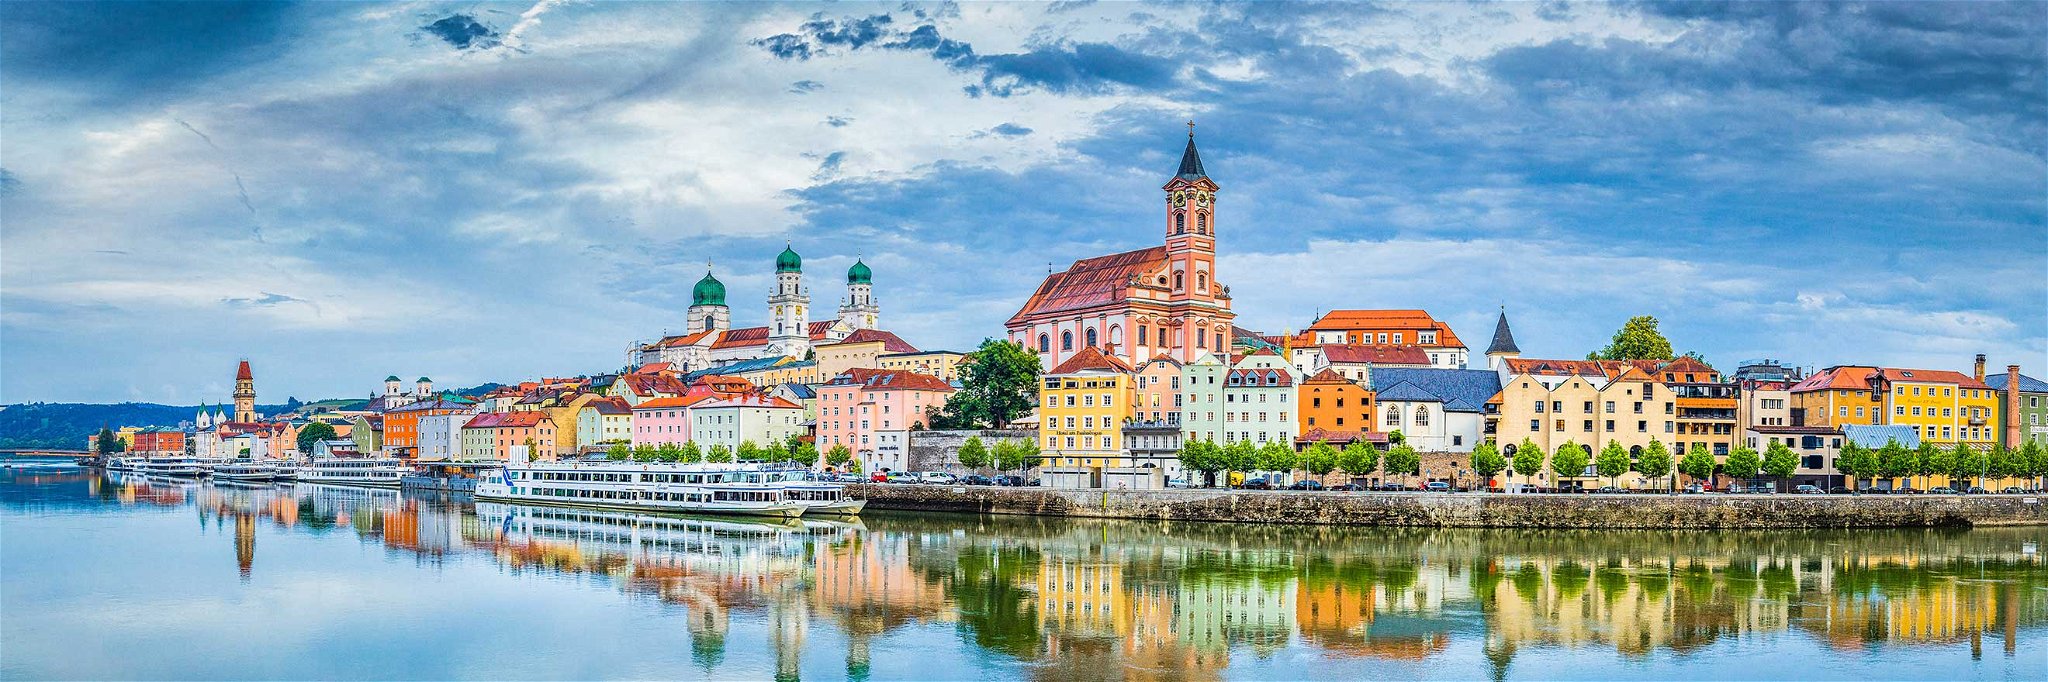 Mit nicko cruises kann man die Perspektive wechseln. Im Bild: Die bunte Häuserfassaden Passaus.